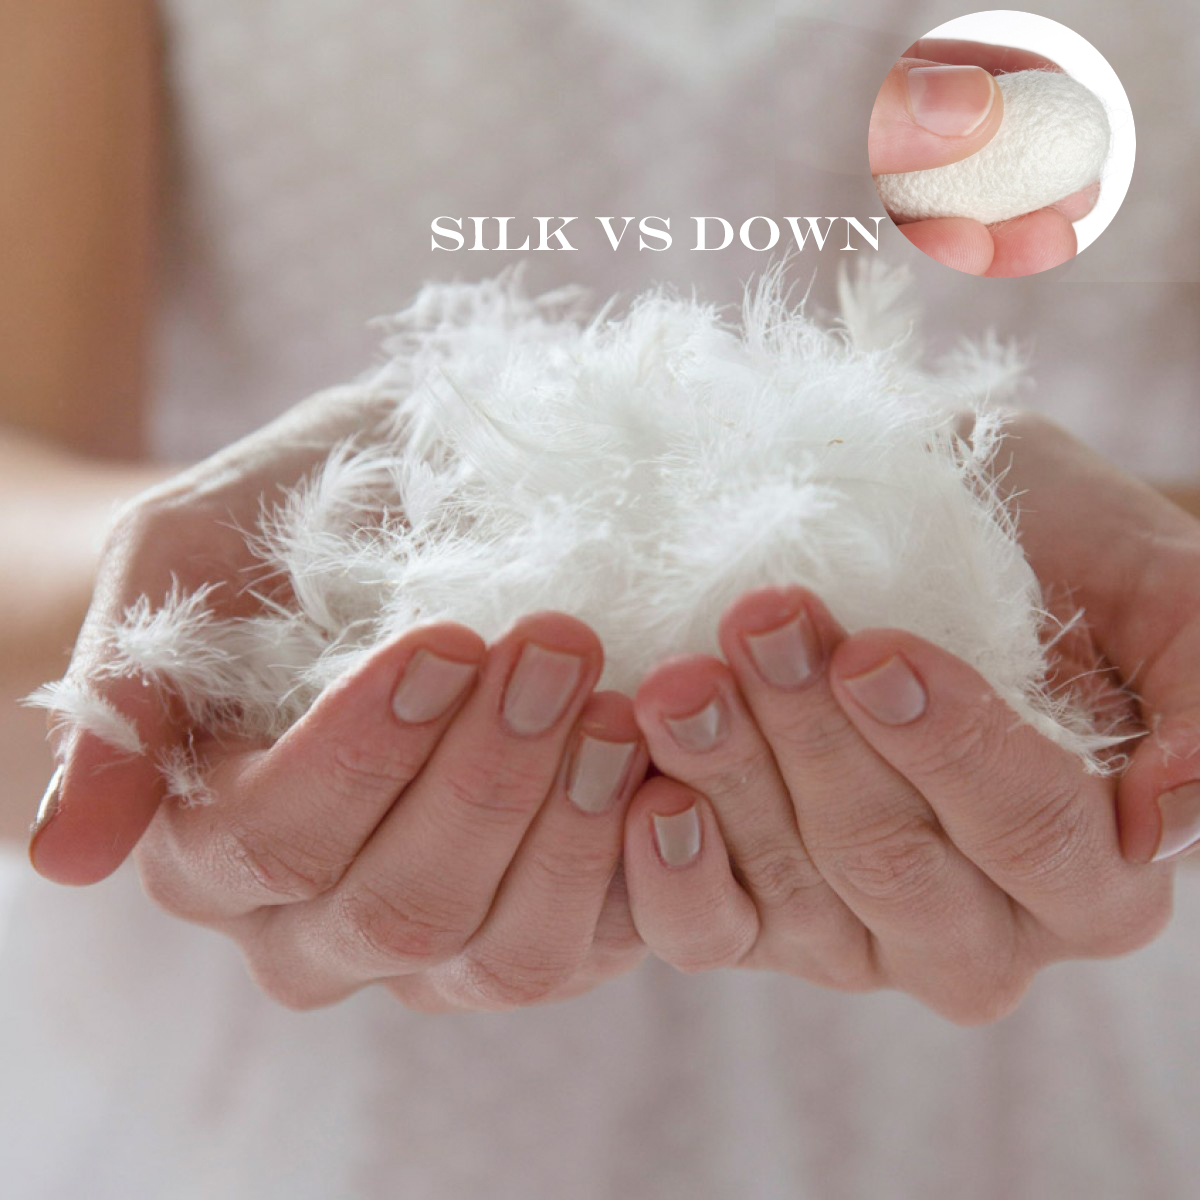 Silk Vs Down Duvets A Quick Comparison Lilysilk